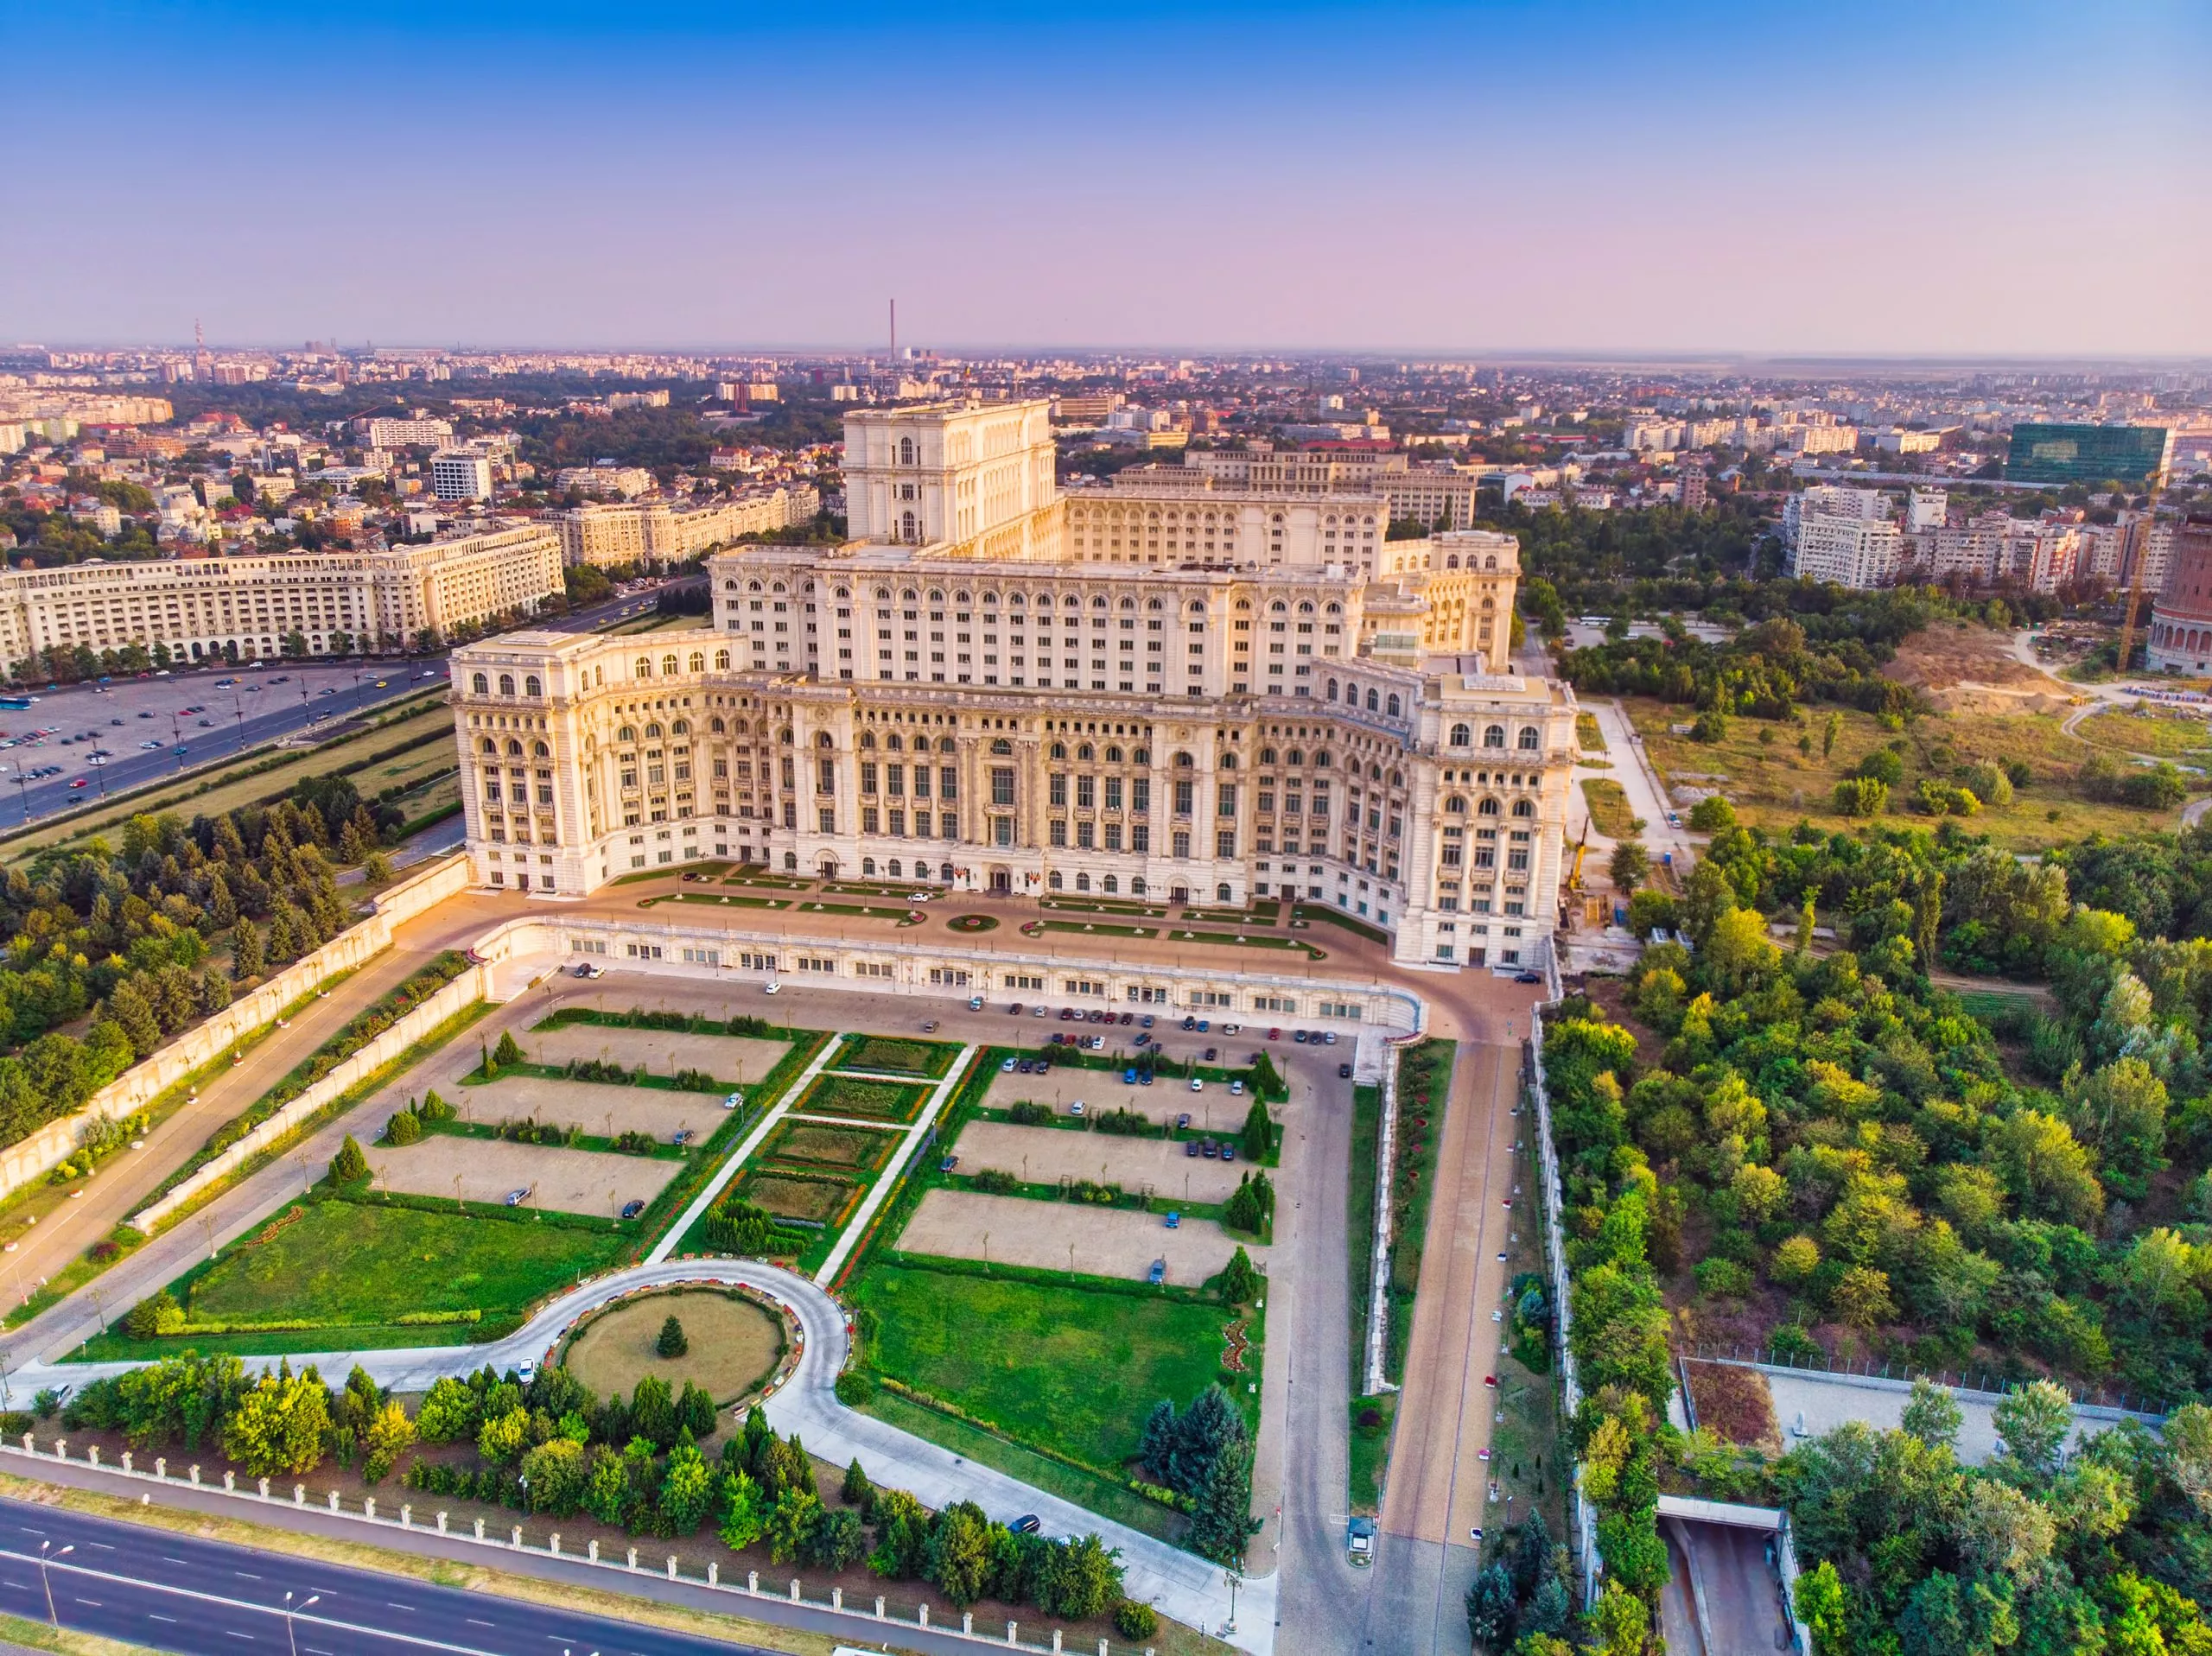 Bâtiment du Parlement ou Maison du peuple dans la ville de Bucarest. Vue aérienne au coucher du soleil avec un ciel bleu